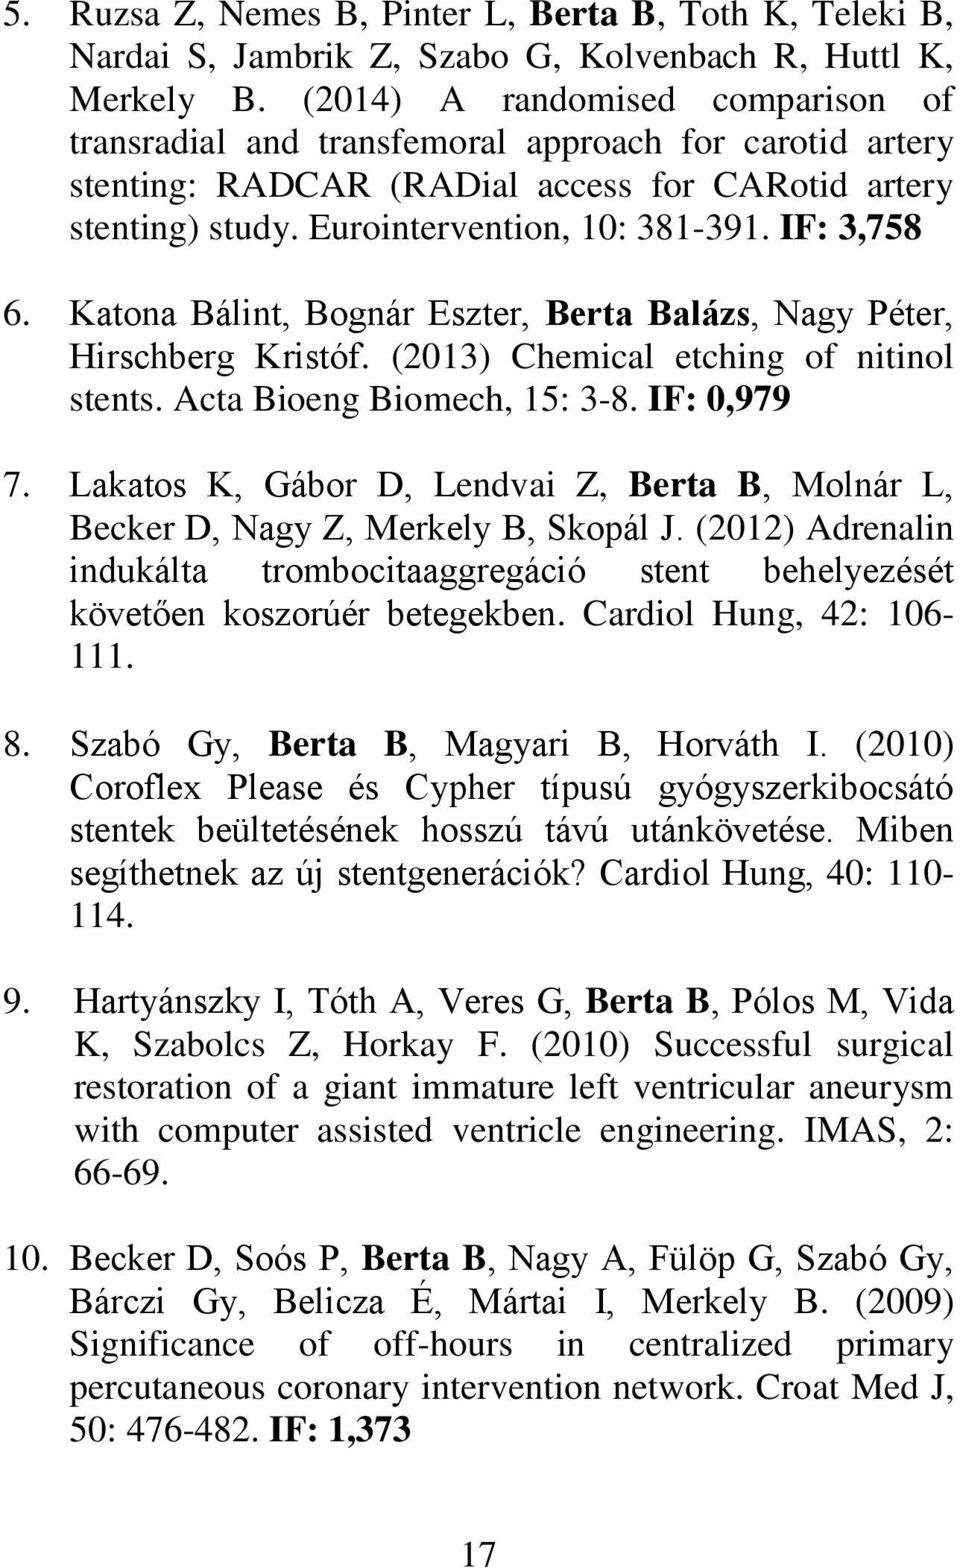 IF: 3,758 6. Katona Bálint, Bognár Eszter, Berta Balázs, Nagy Péter, Hirschberg Kristóf. (2013) Chemical etching of nitinol stents. Acta Bioeng Biomech, 15: 3-8. IF: 0,979 7.